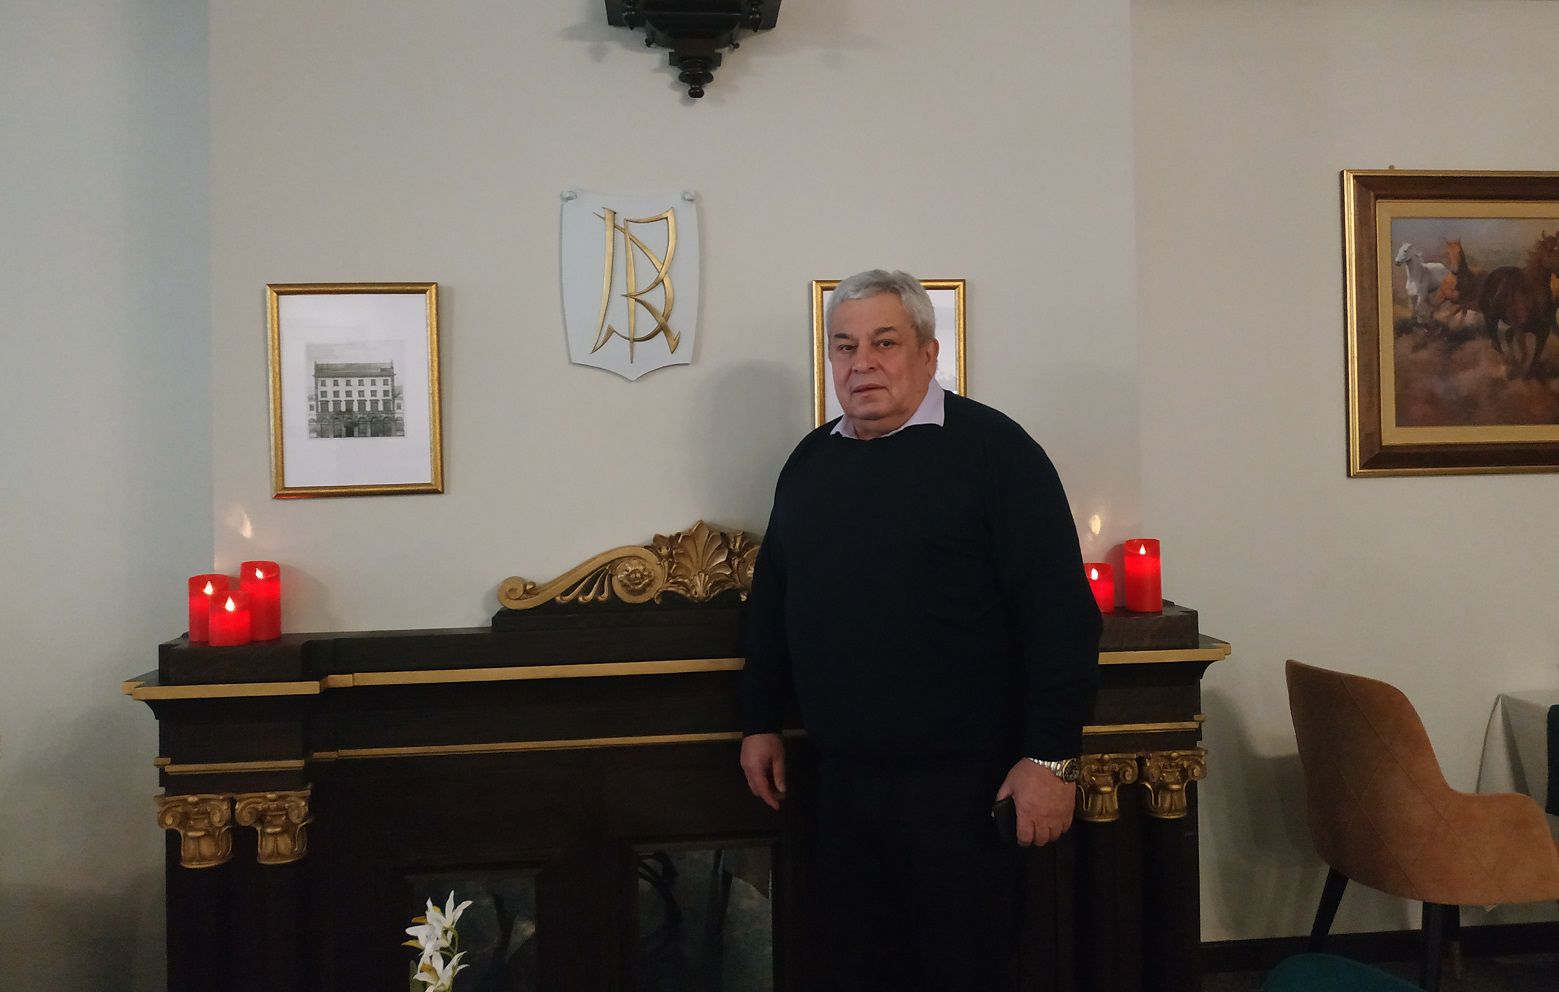 Василий Кичеджи рядом с монограммой с инициалами D.R.  / Фото: Наталия Курчатова